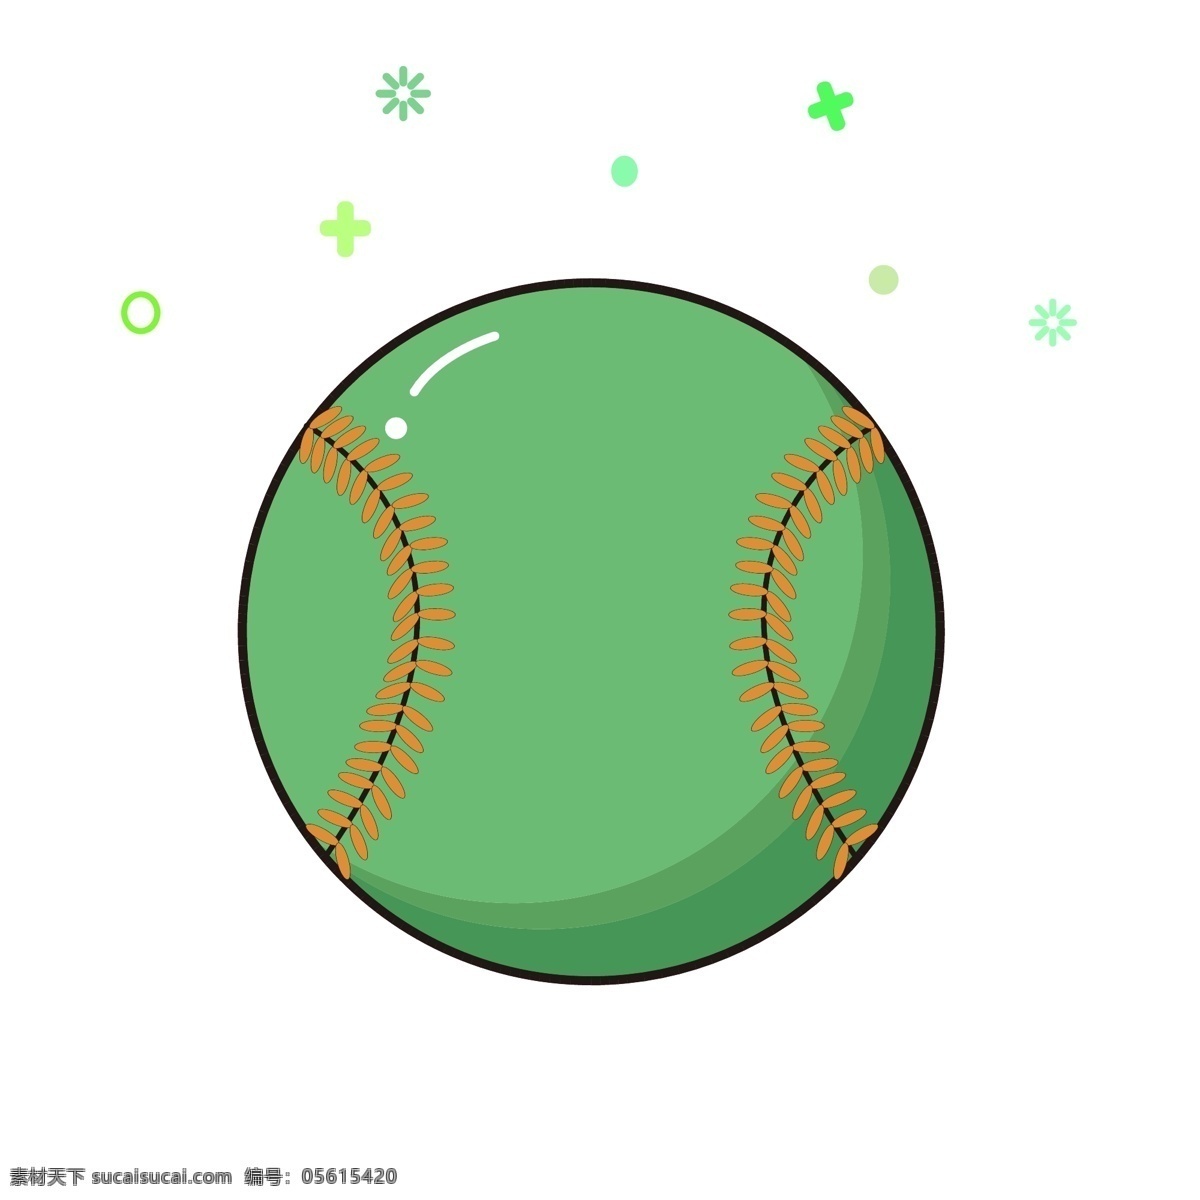 球类 元素 网球 mbe 卡通 可爱 简约 矢量 可商用